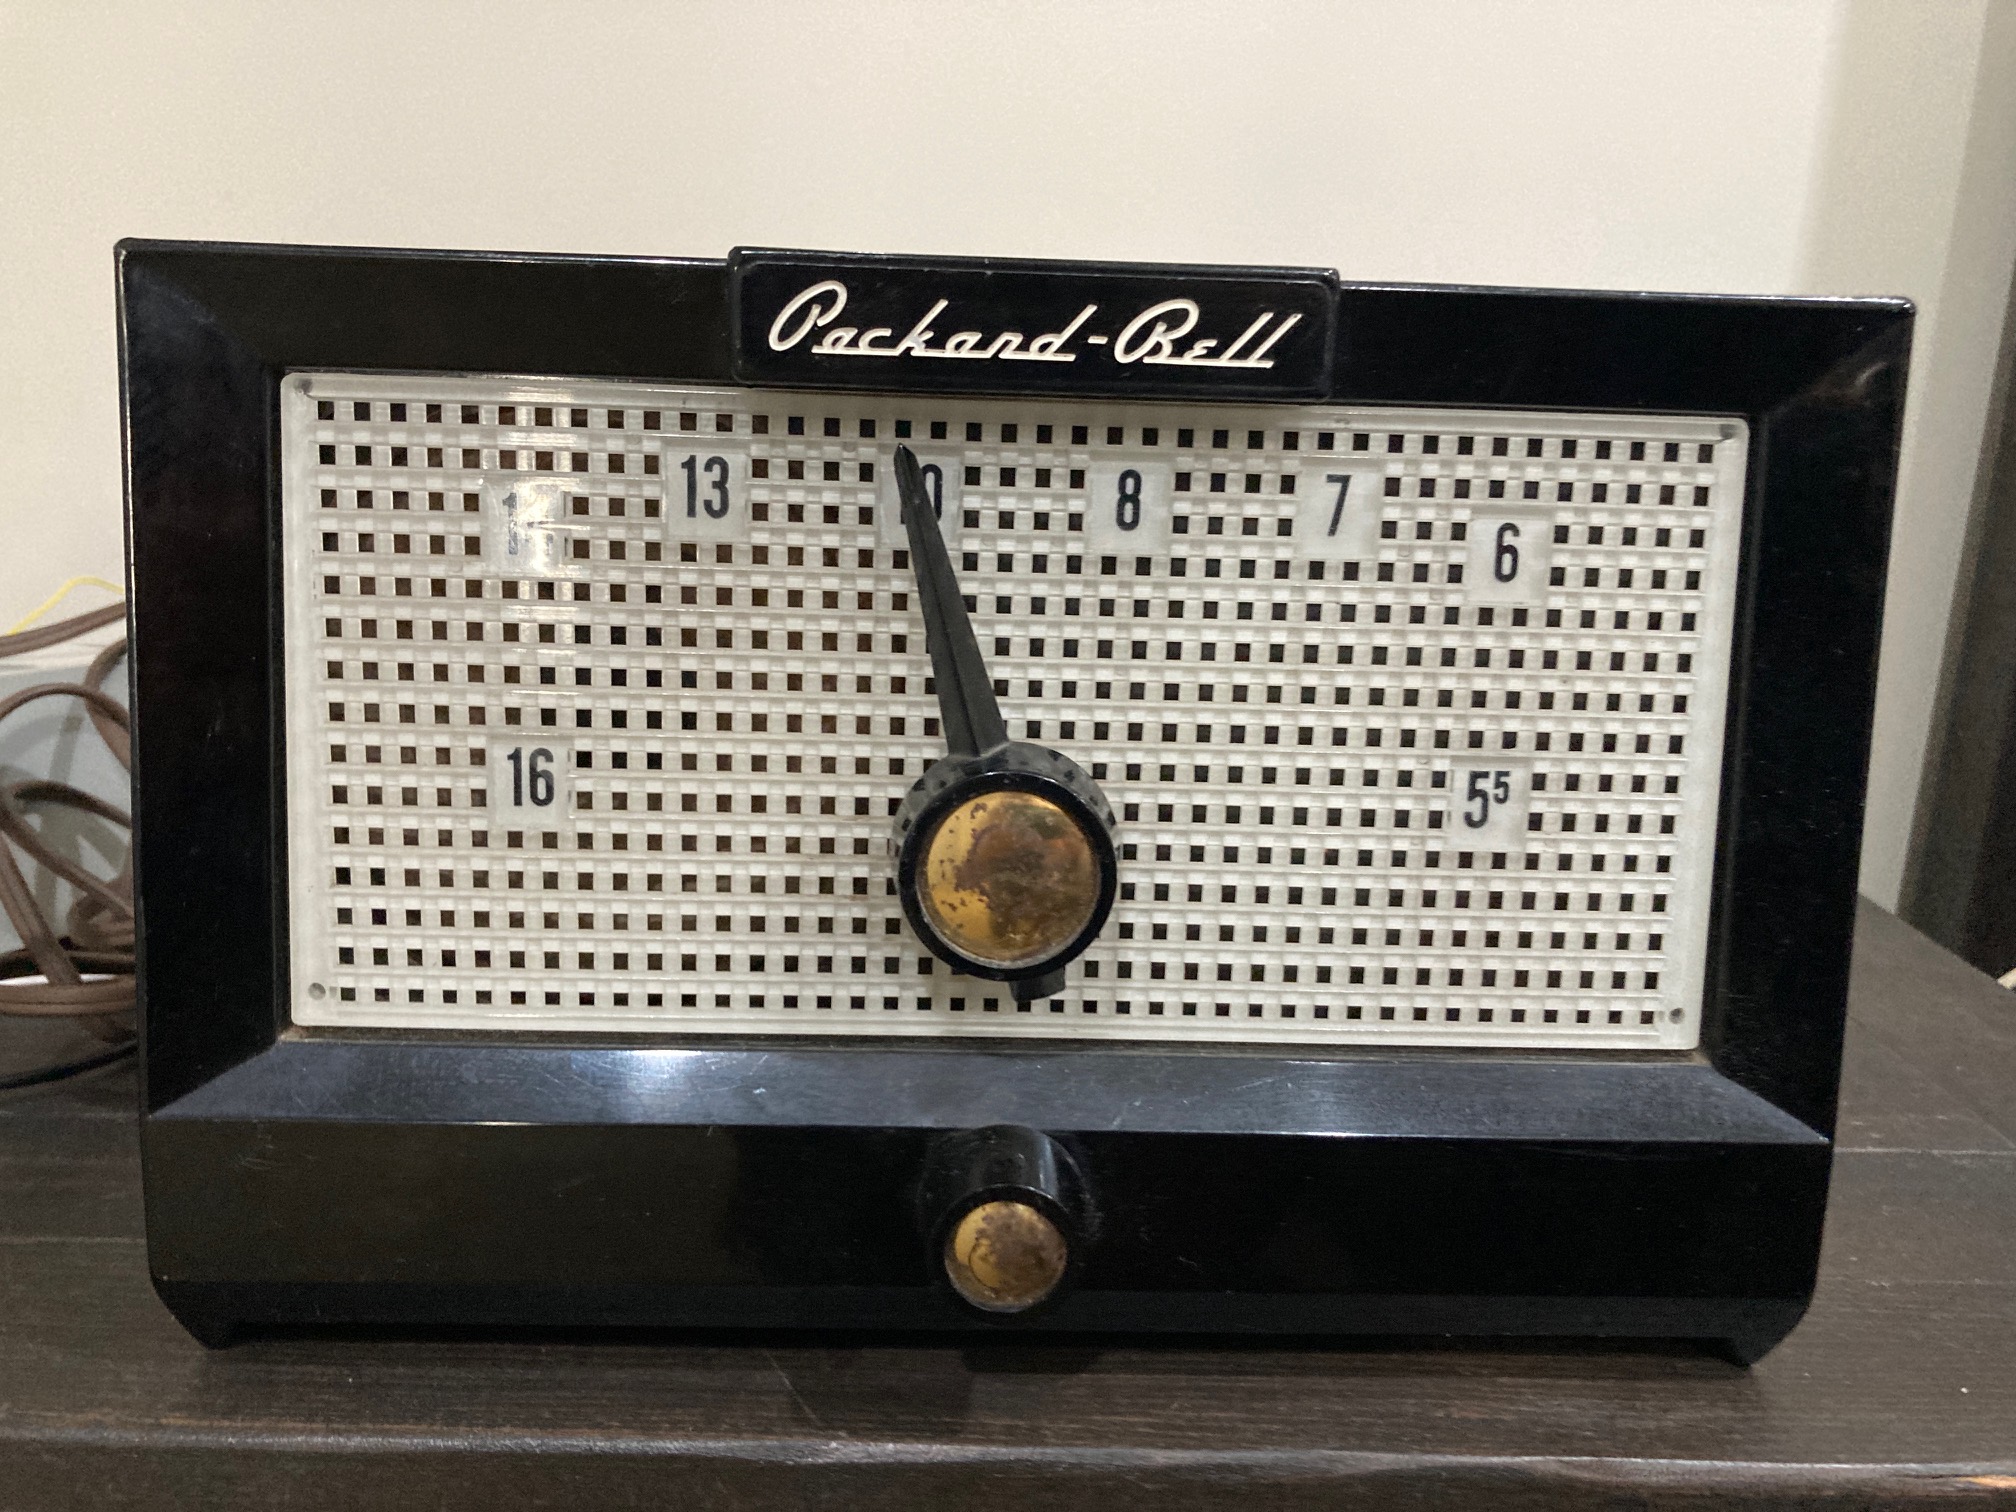 1957 Packard Bell 5R1